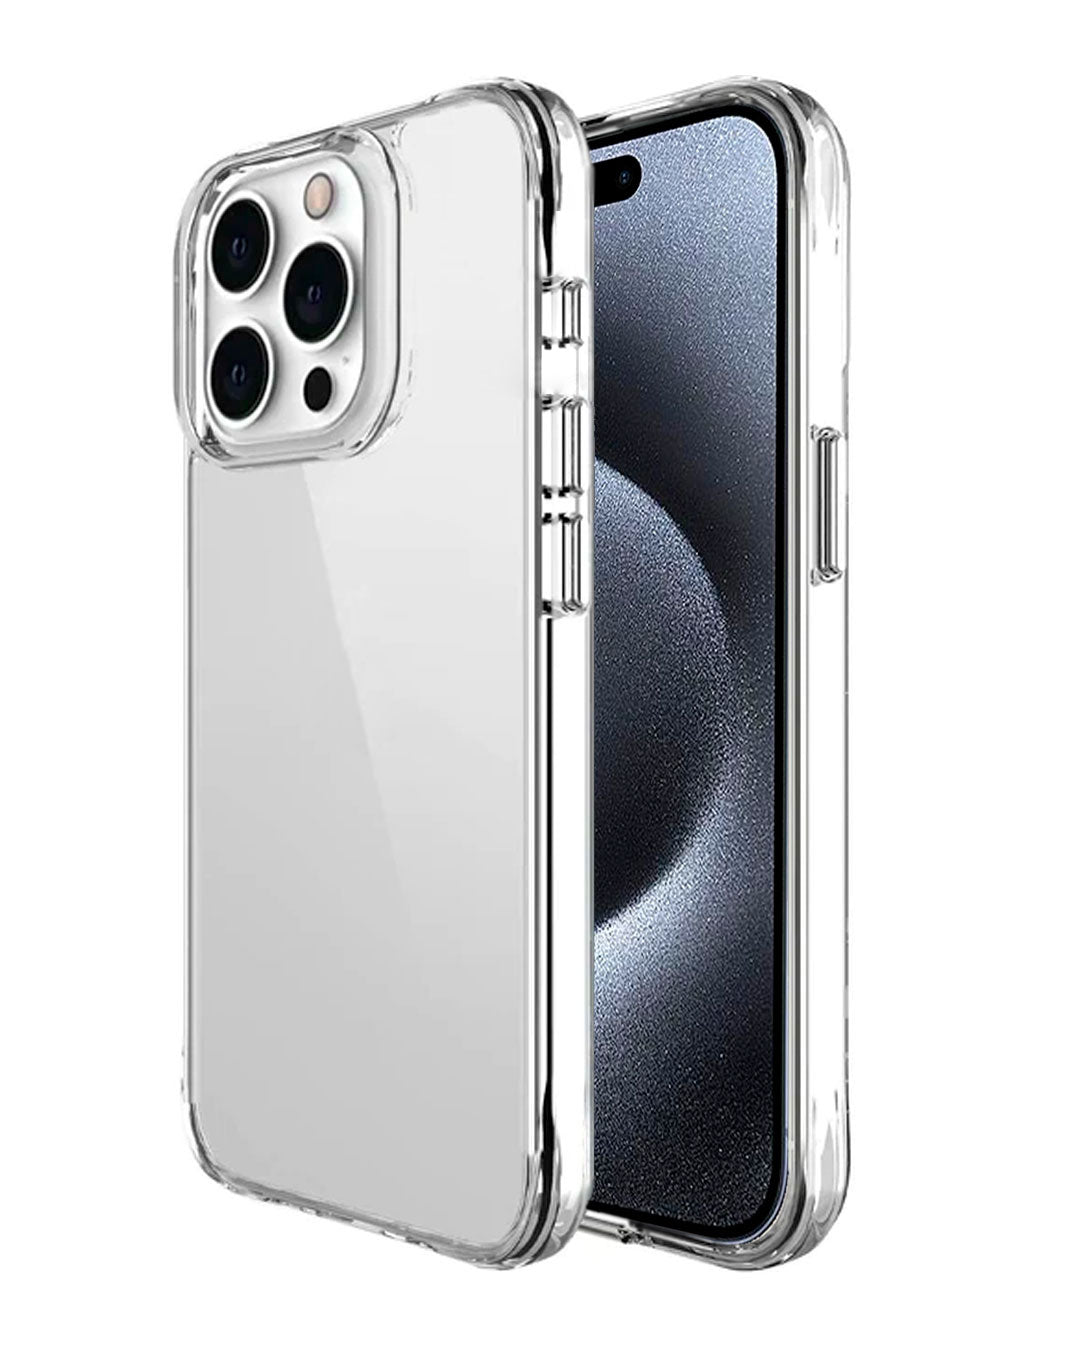 Case Space Drop Y Vidrio Templado para iPhone X Transparente SPACE